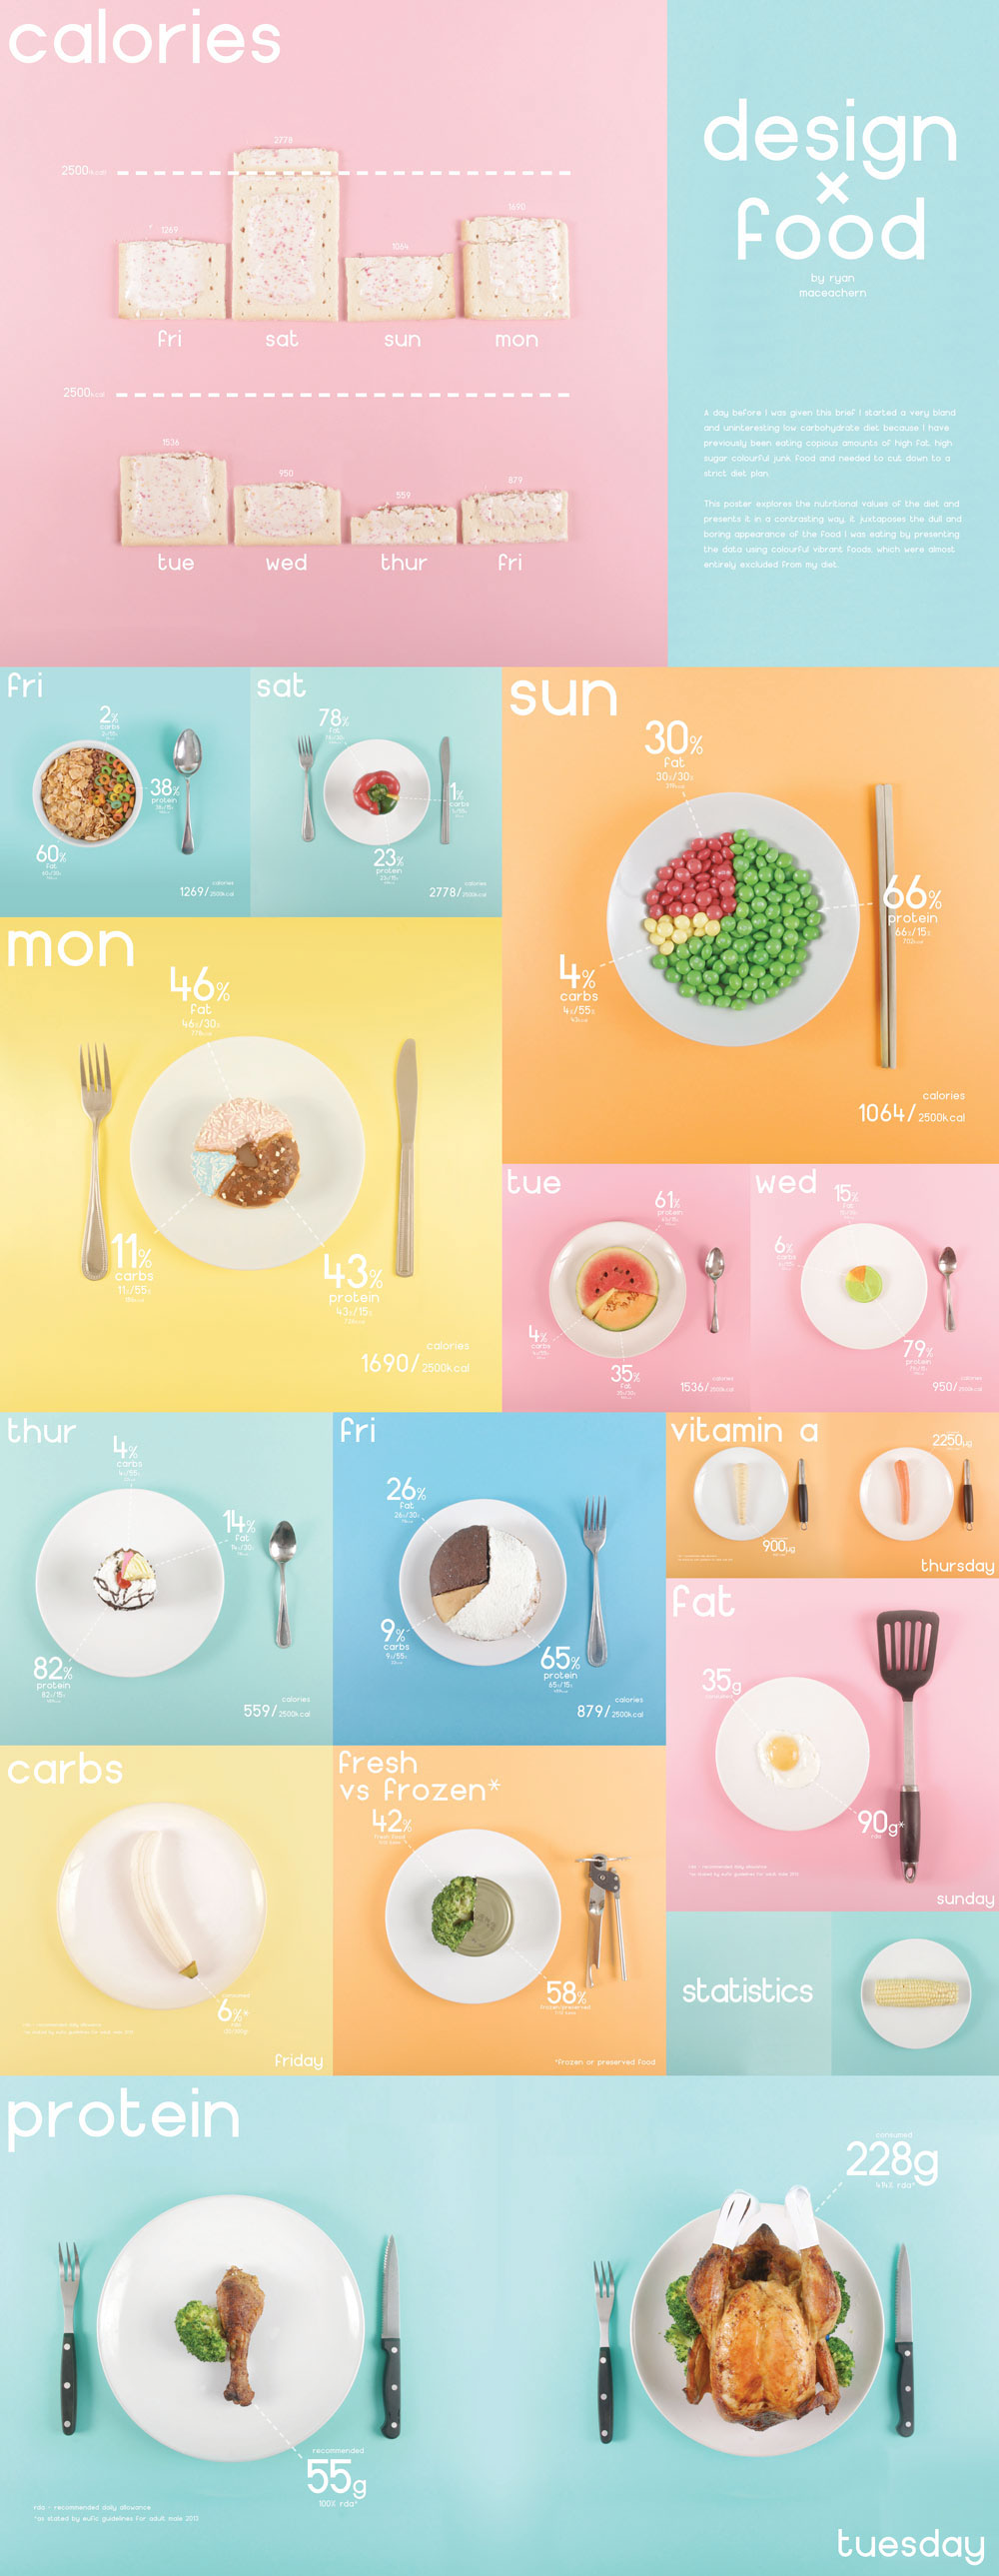 infographic Food  Data Bristol design diet uwe pie chart information photo student University